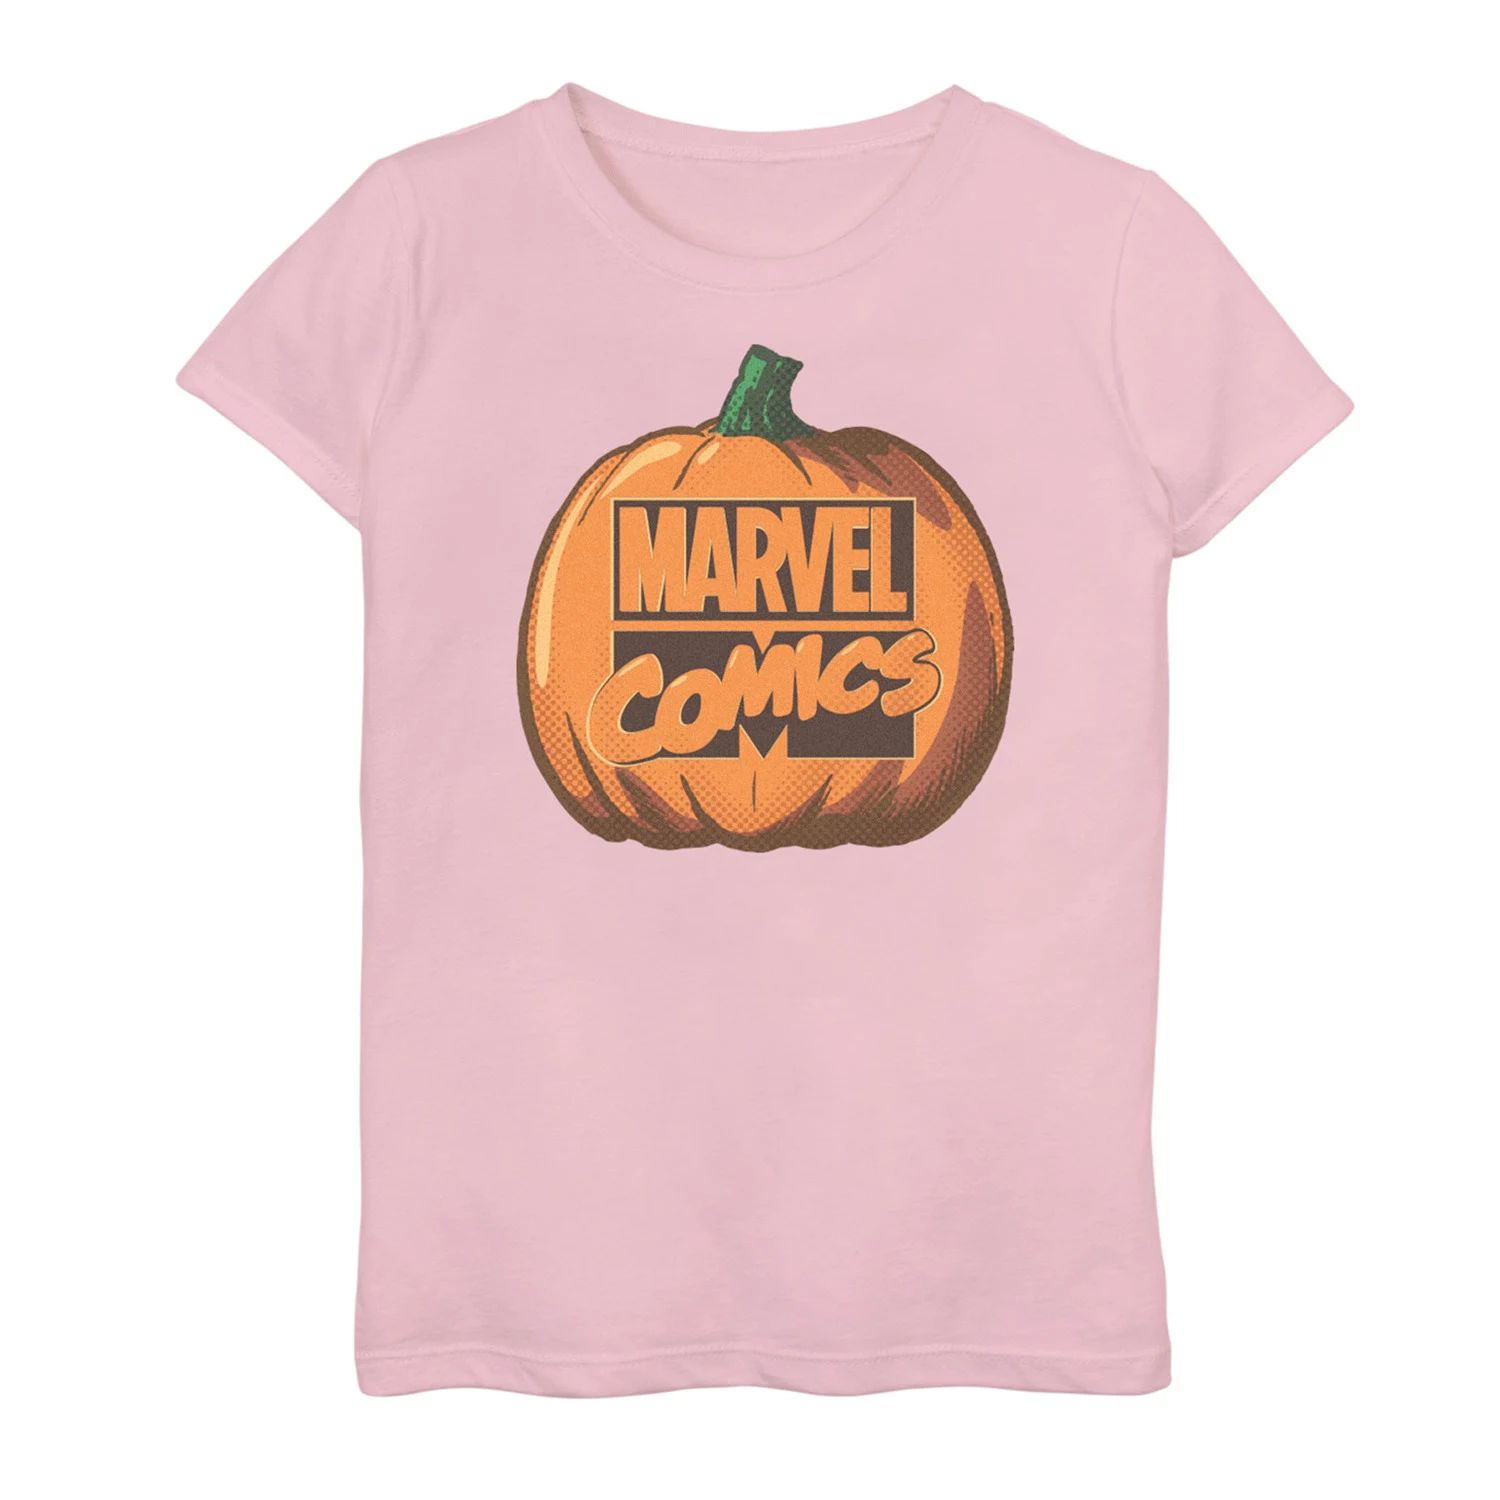 Футболка с рисунком тыквы и логотипом Marvel Comics для девочек 7–16 лет Licensed Character футболка с рисунком конфет и тыквы для девочек 7–16 лет licensed character